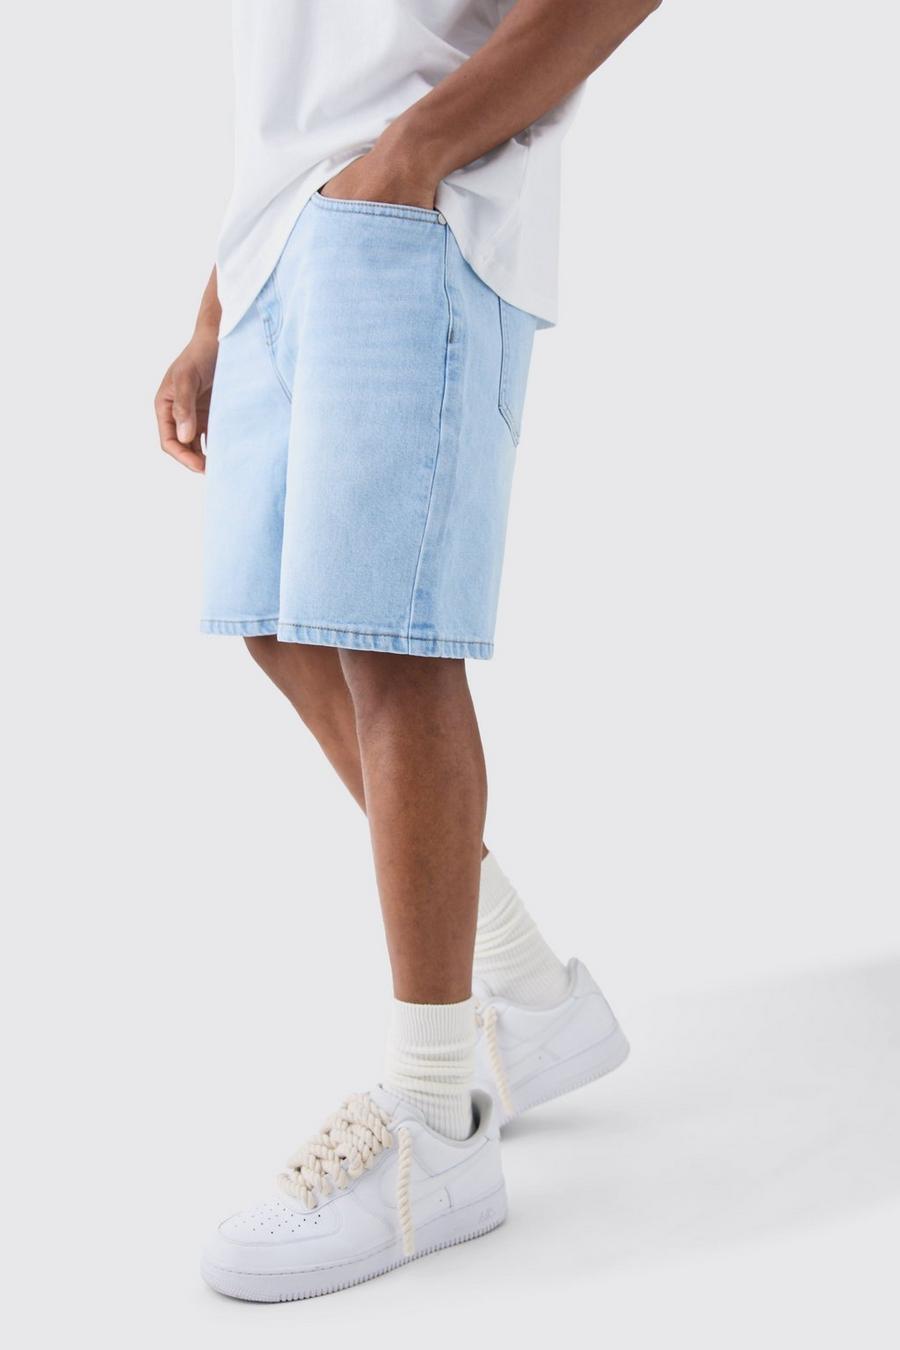 Pantalones cortos vaqueros holgados sin tratar en azul hielo, Ice blue image number 1